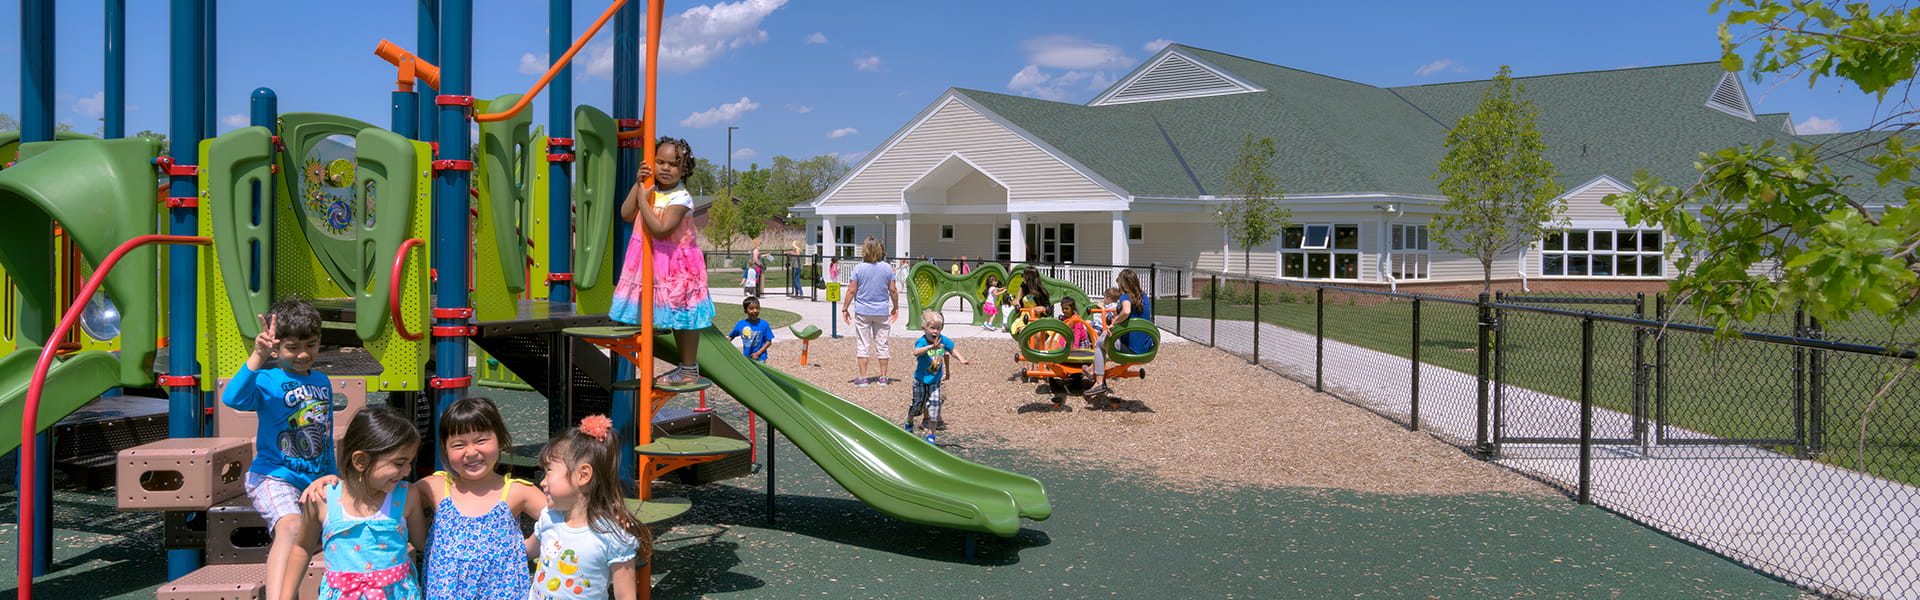 Novi Community Schools playground.